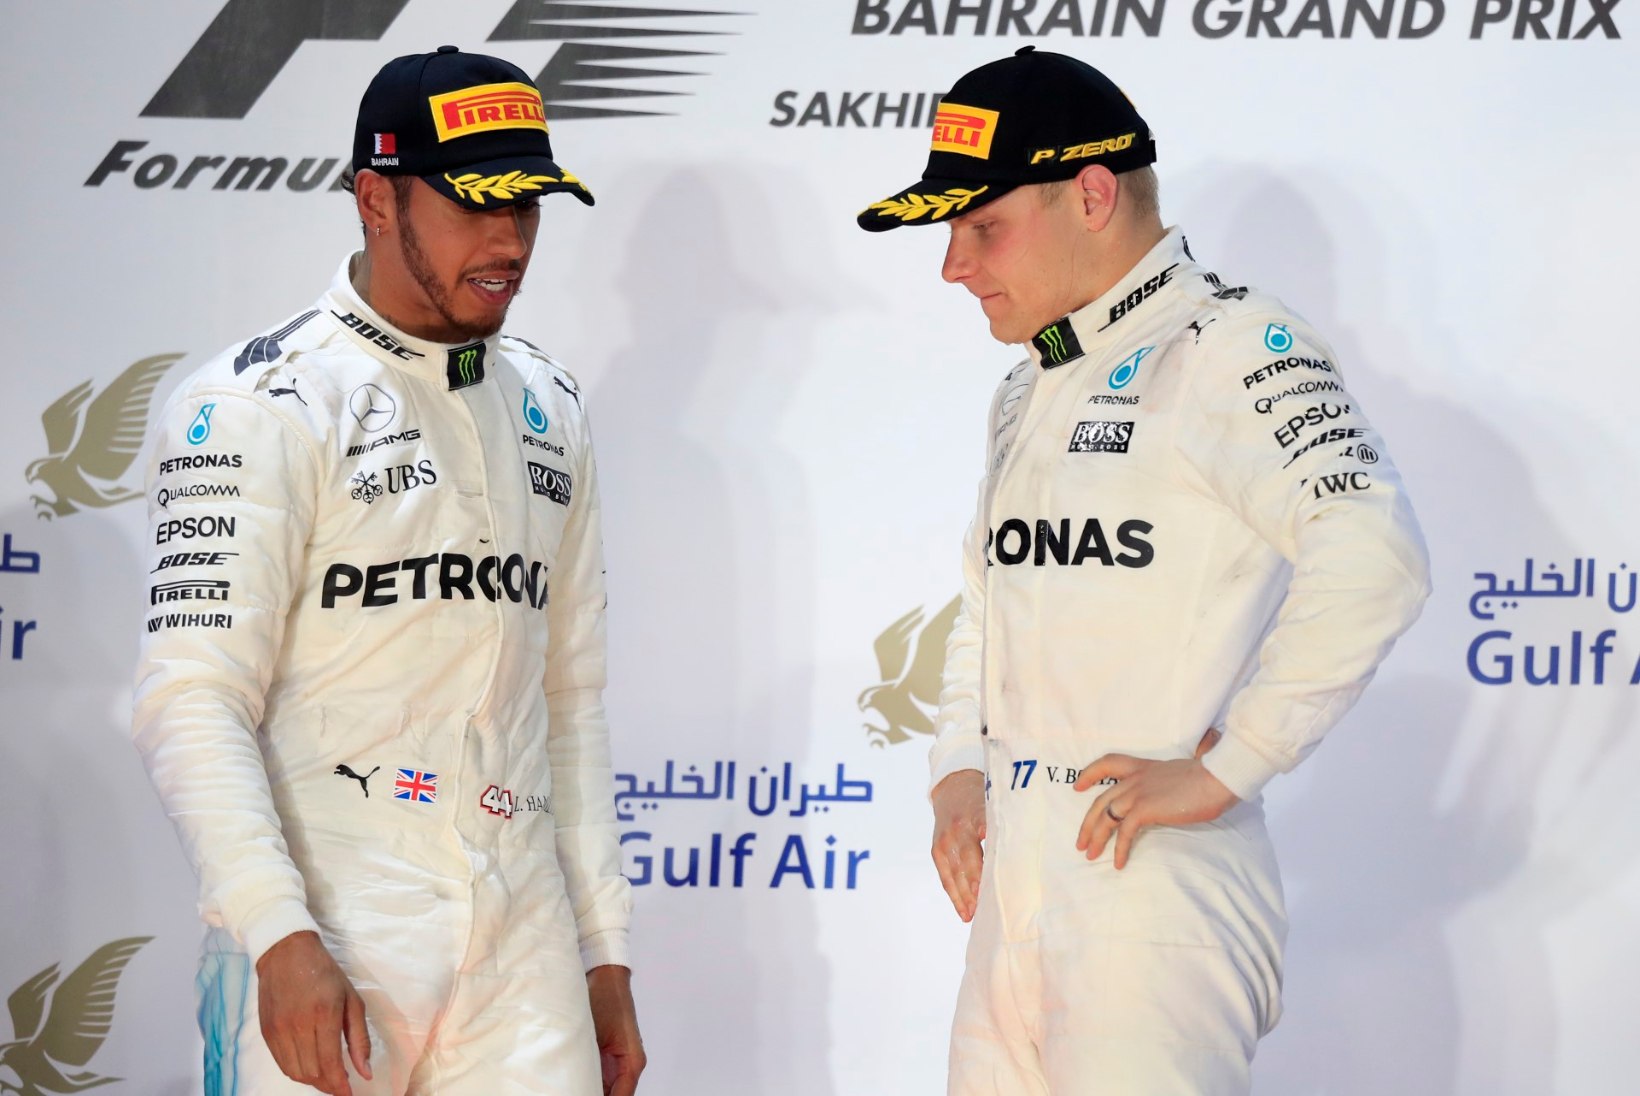 Vetteli vägevad sõidud tõukavad Mercedest ebameeldiva otsuse suunas